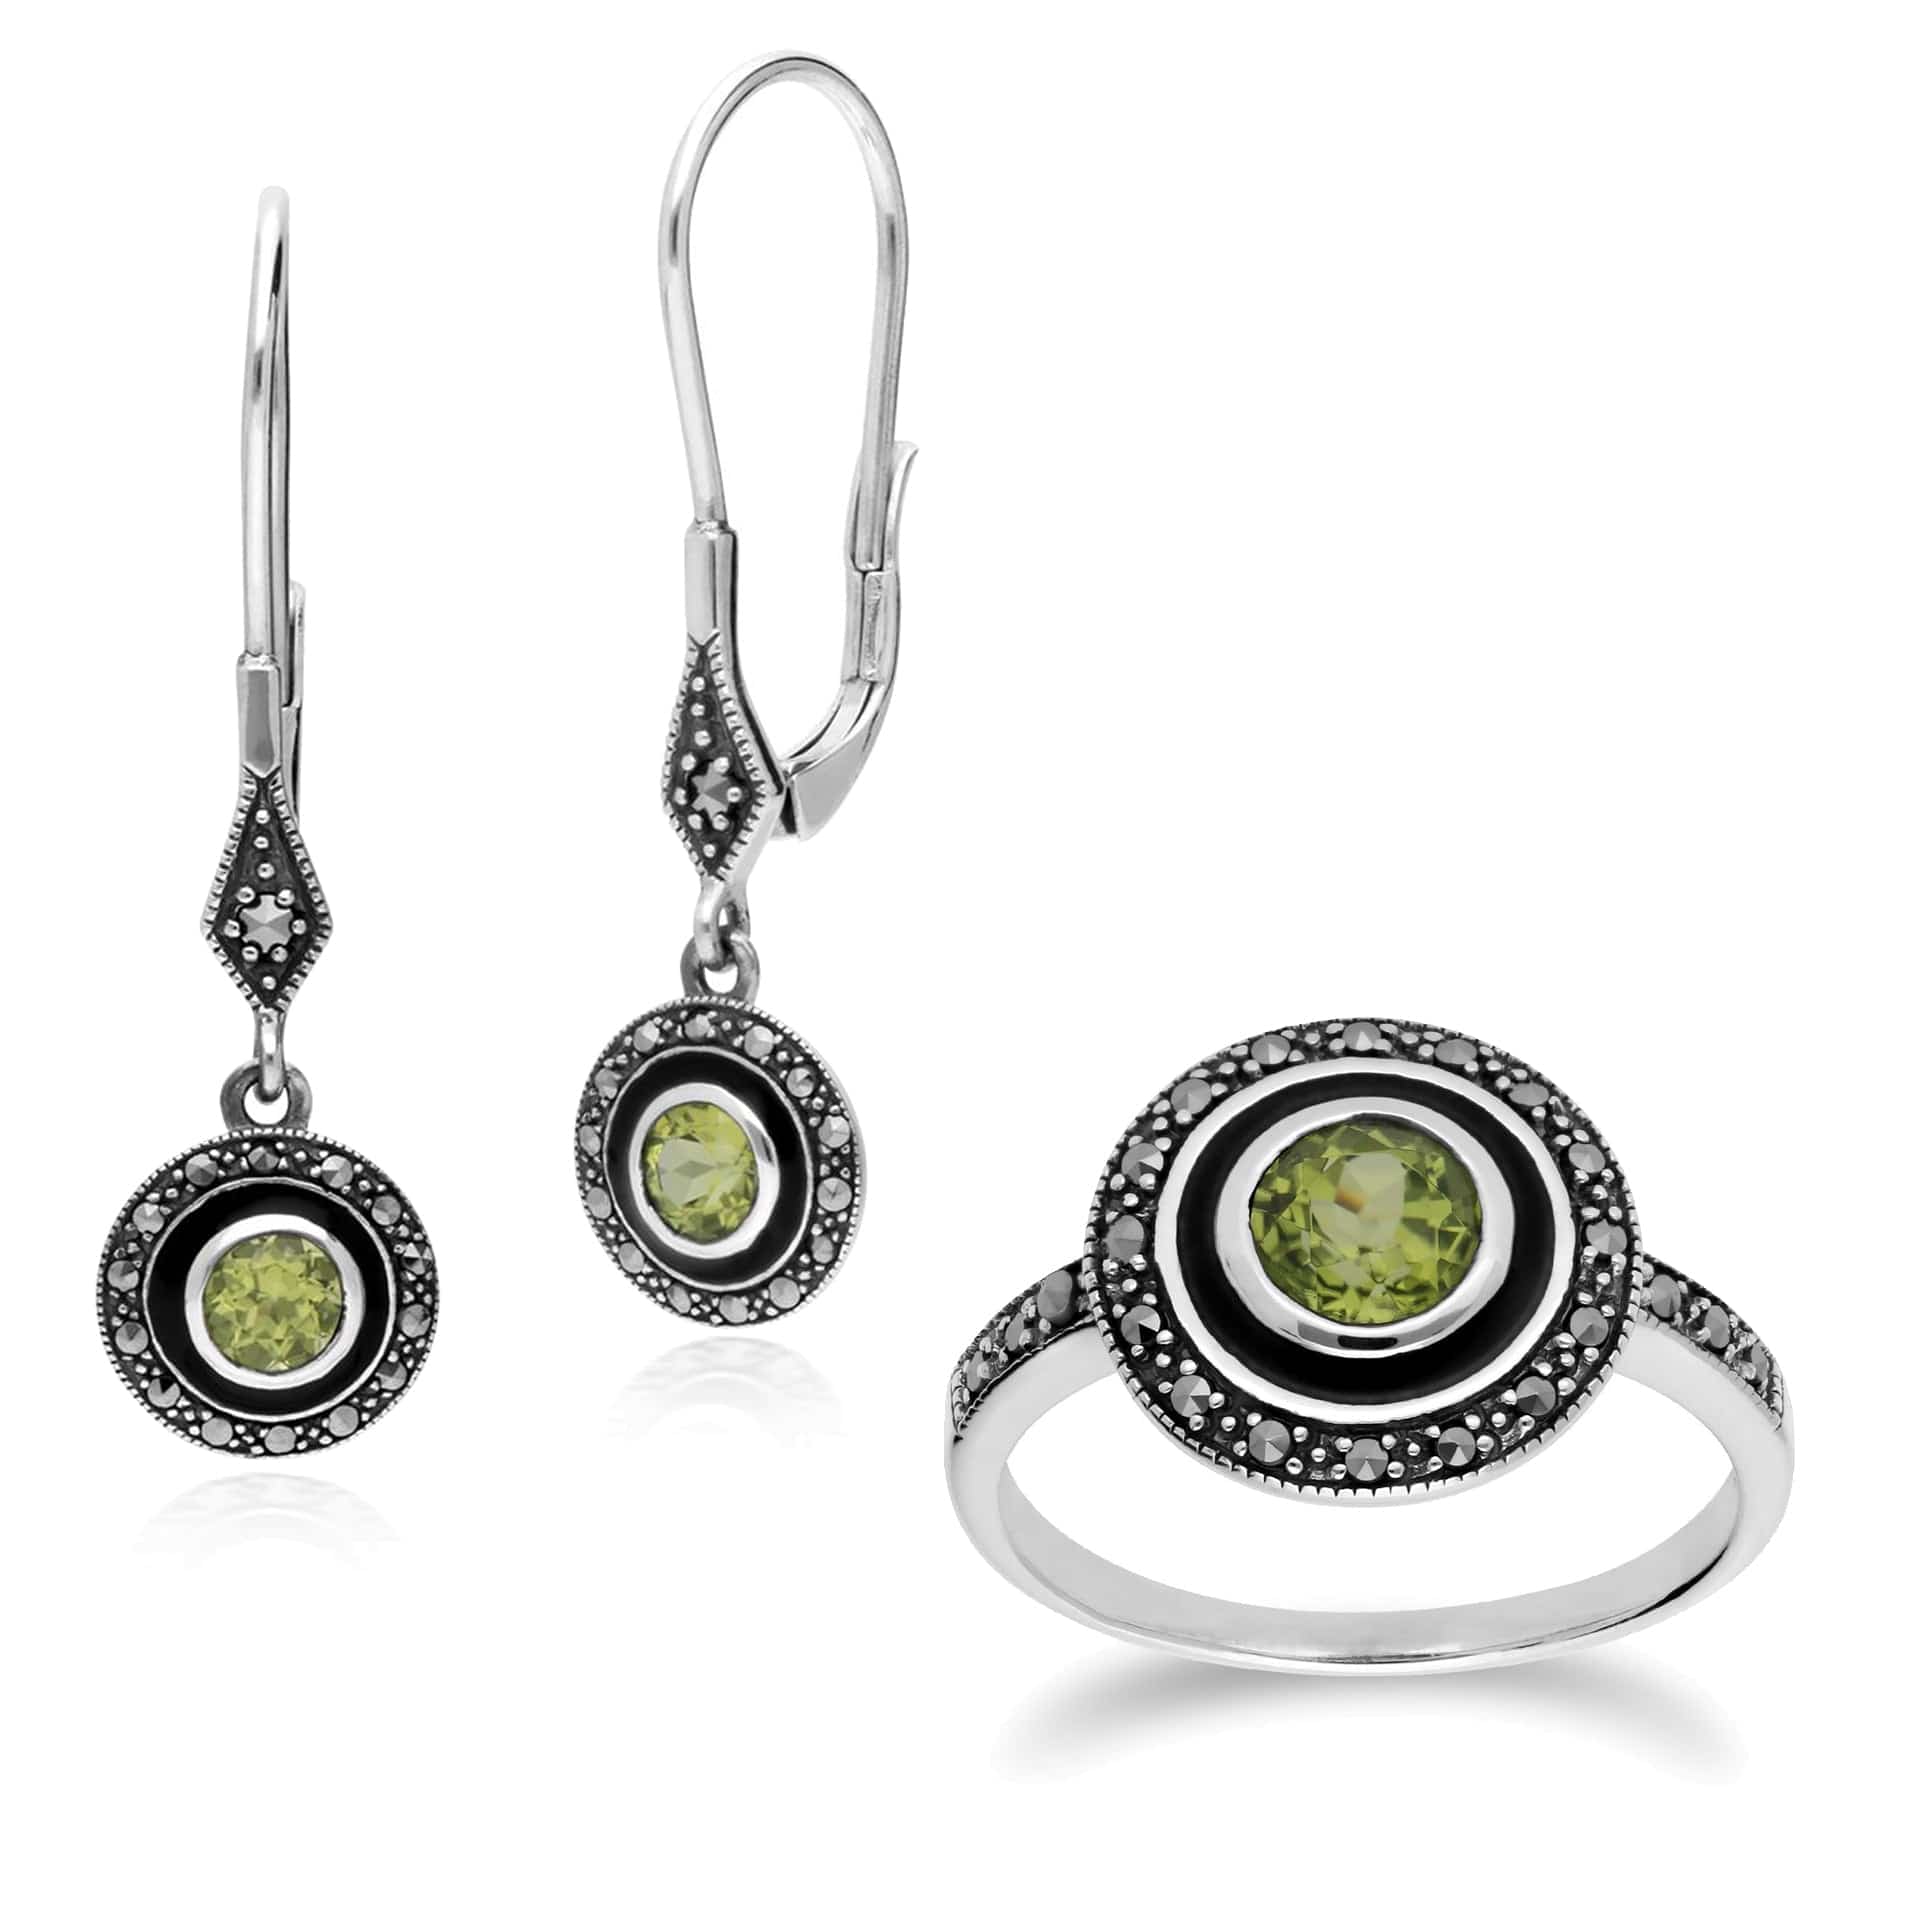 214E860704925-214R599604925 Art Deco Style Round Peridot, Marcasite & Black Enamel Drop Earrings & Ring Set in 925 Sterling Silver 1